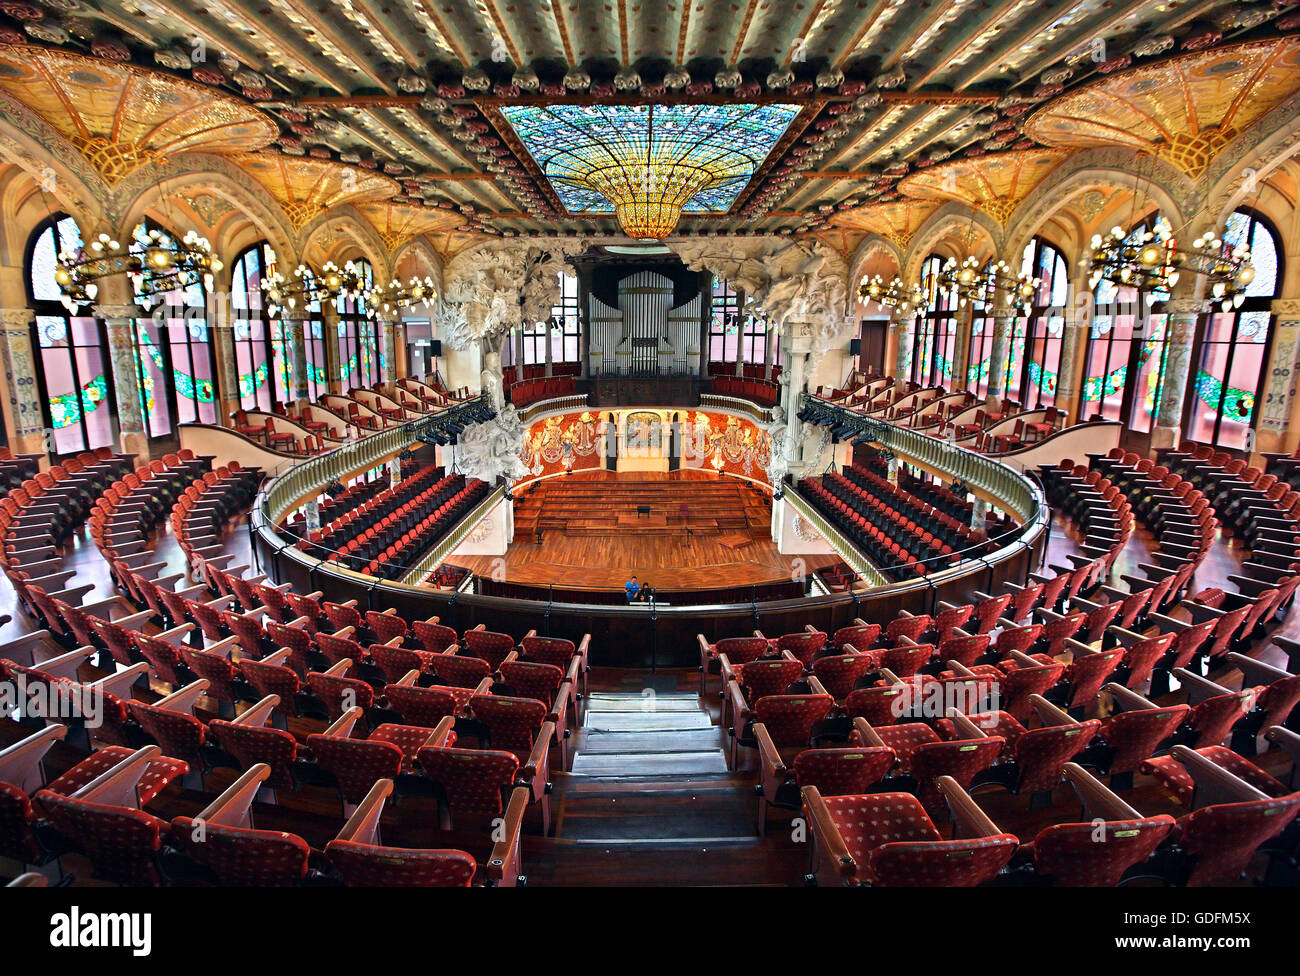 La salle de concert dans le Palau de la Musica Catalana, Barcelone, Catalogne, Espagne. Banque D'Images